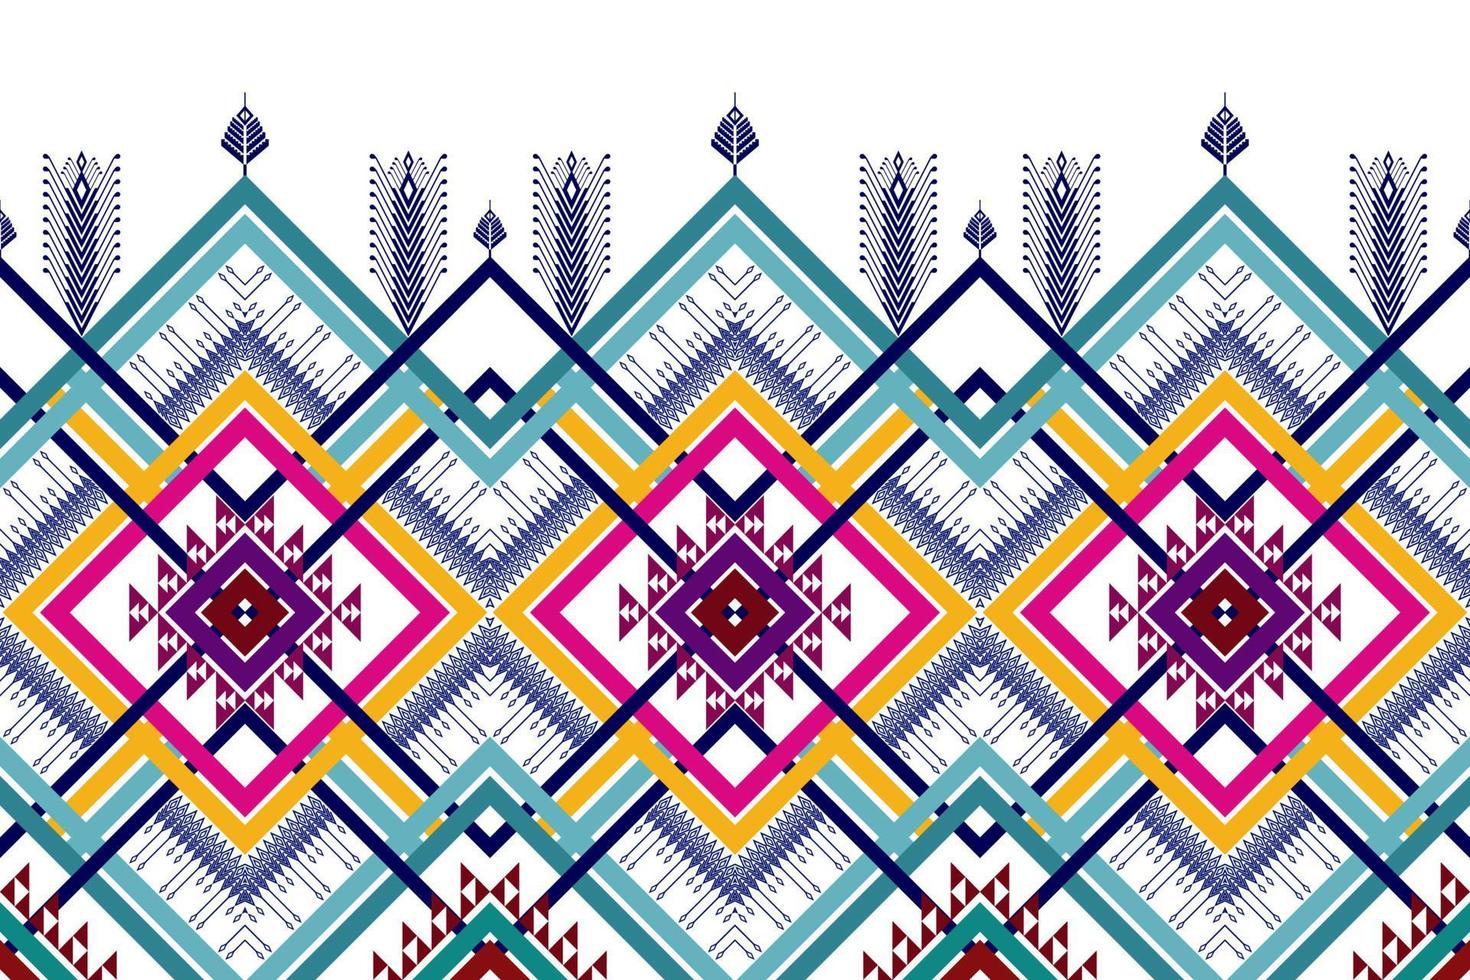 geometrisch etnisch patroonontwerp. Azteekse stof tapijt mandala ornament chevron textiel decoratie behang. tribal turkije afrikaanse indische traditionele borduurwerk vector illustraties achtergrond